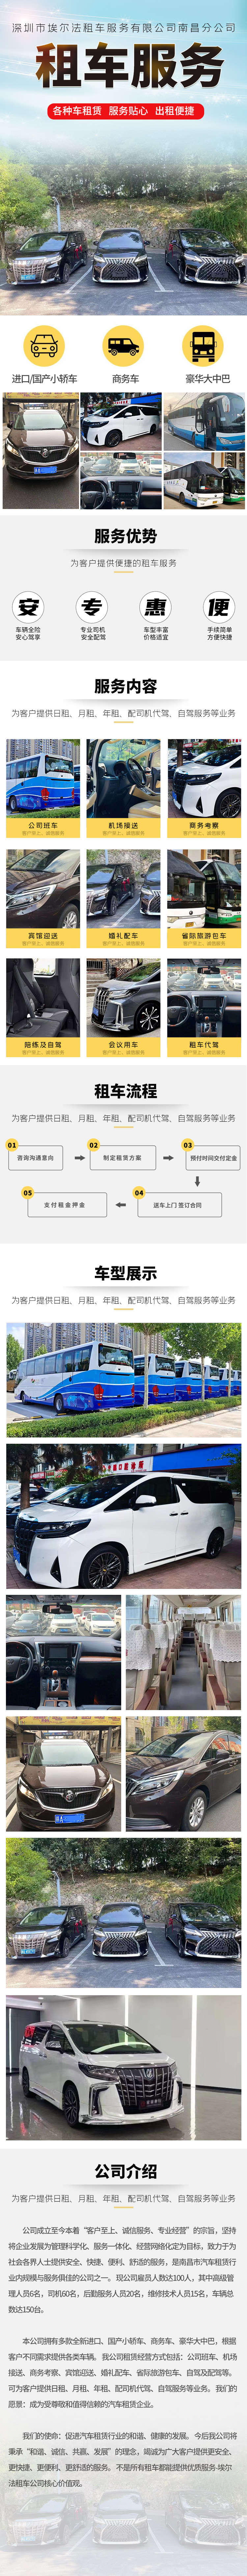 中国澳门到广州东站跨境租车